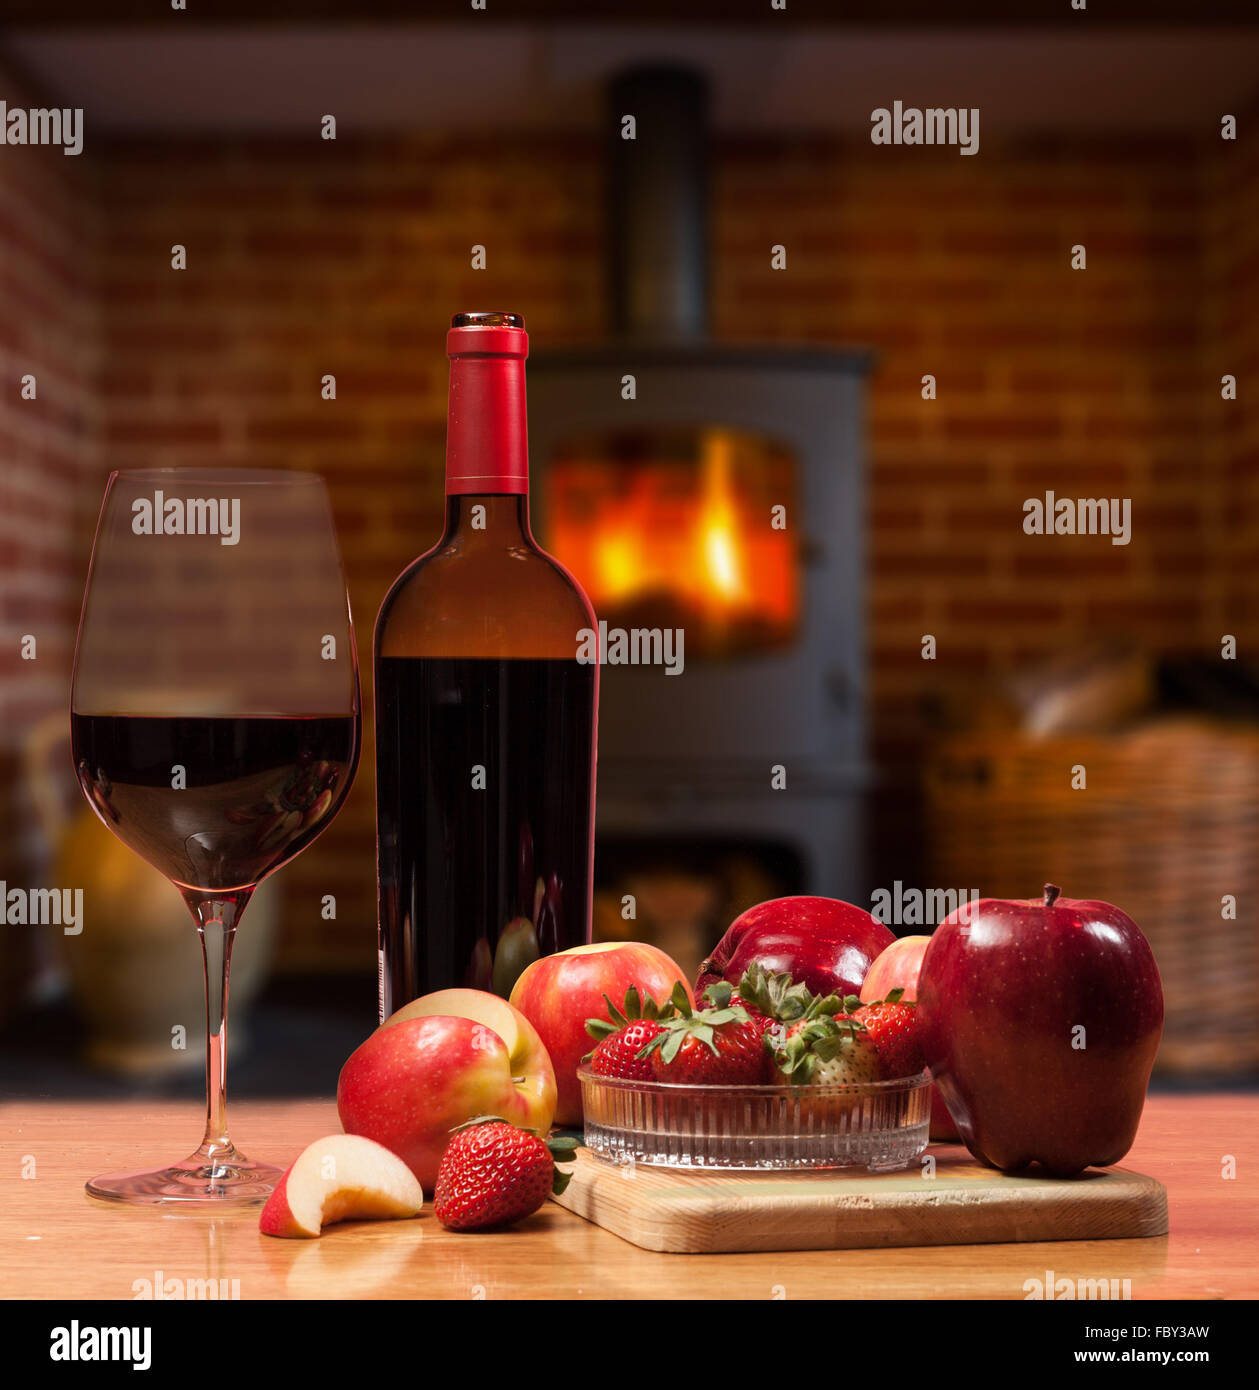 Vino rosso e frutta nella parte anteriore del fuoco ardente Foto Stock